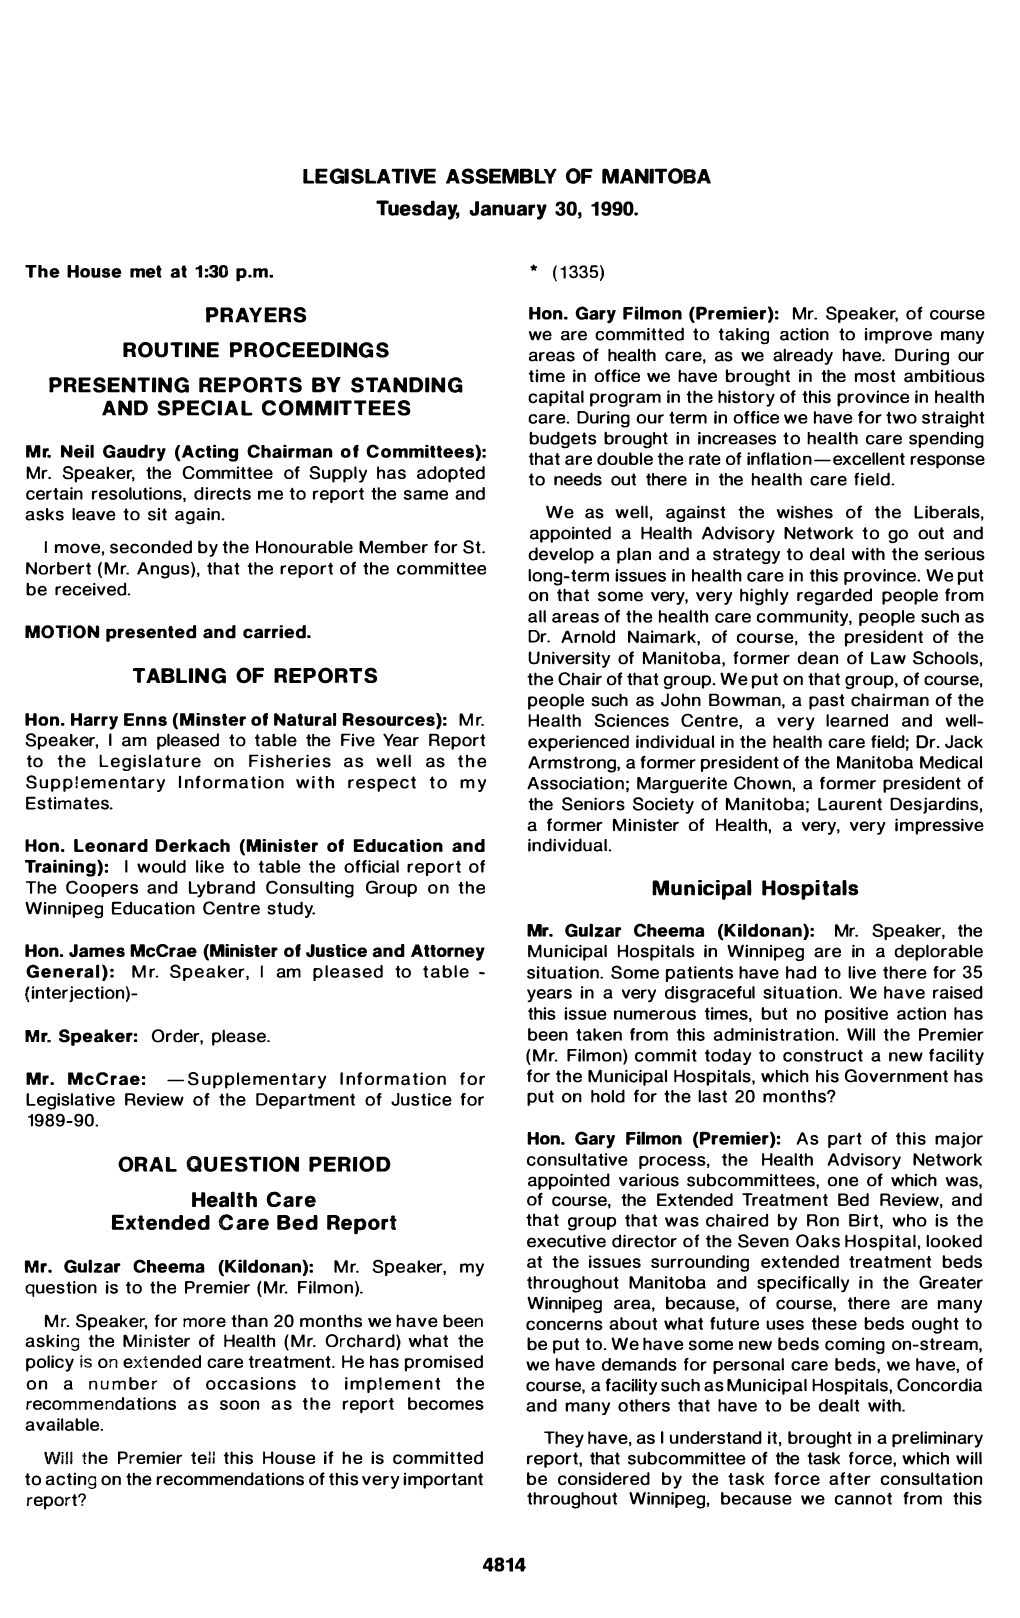 LEGISLATIVE ASSEMBLY of MANITOBA Tuesday, January 30, 1990